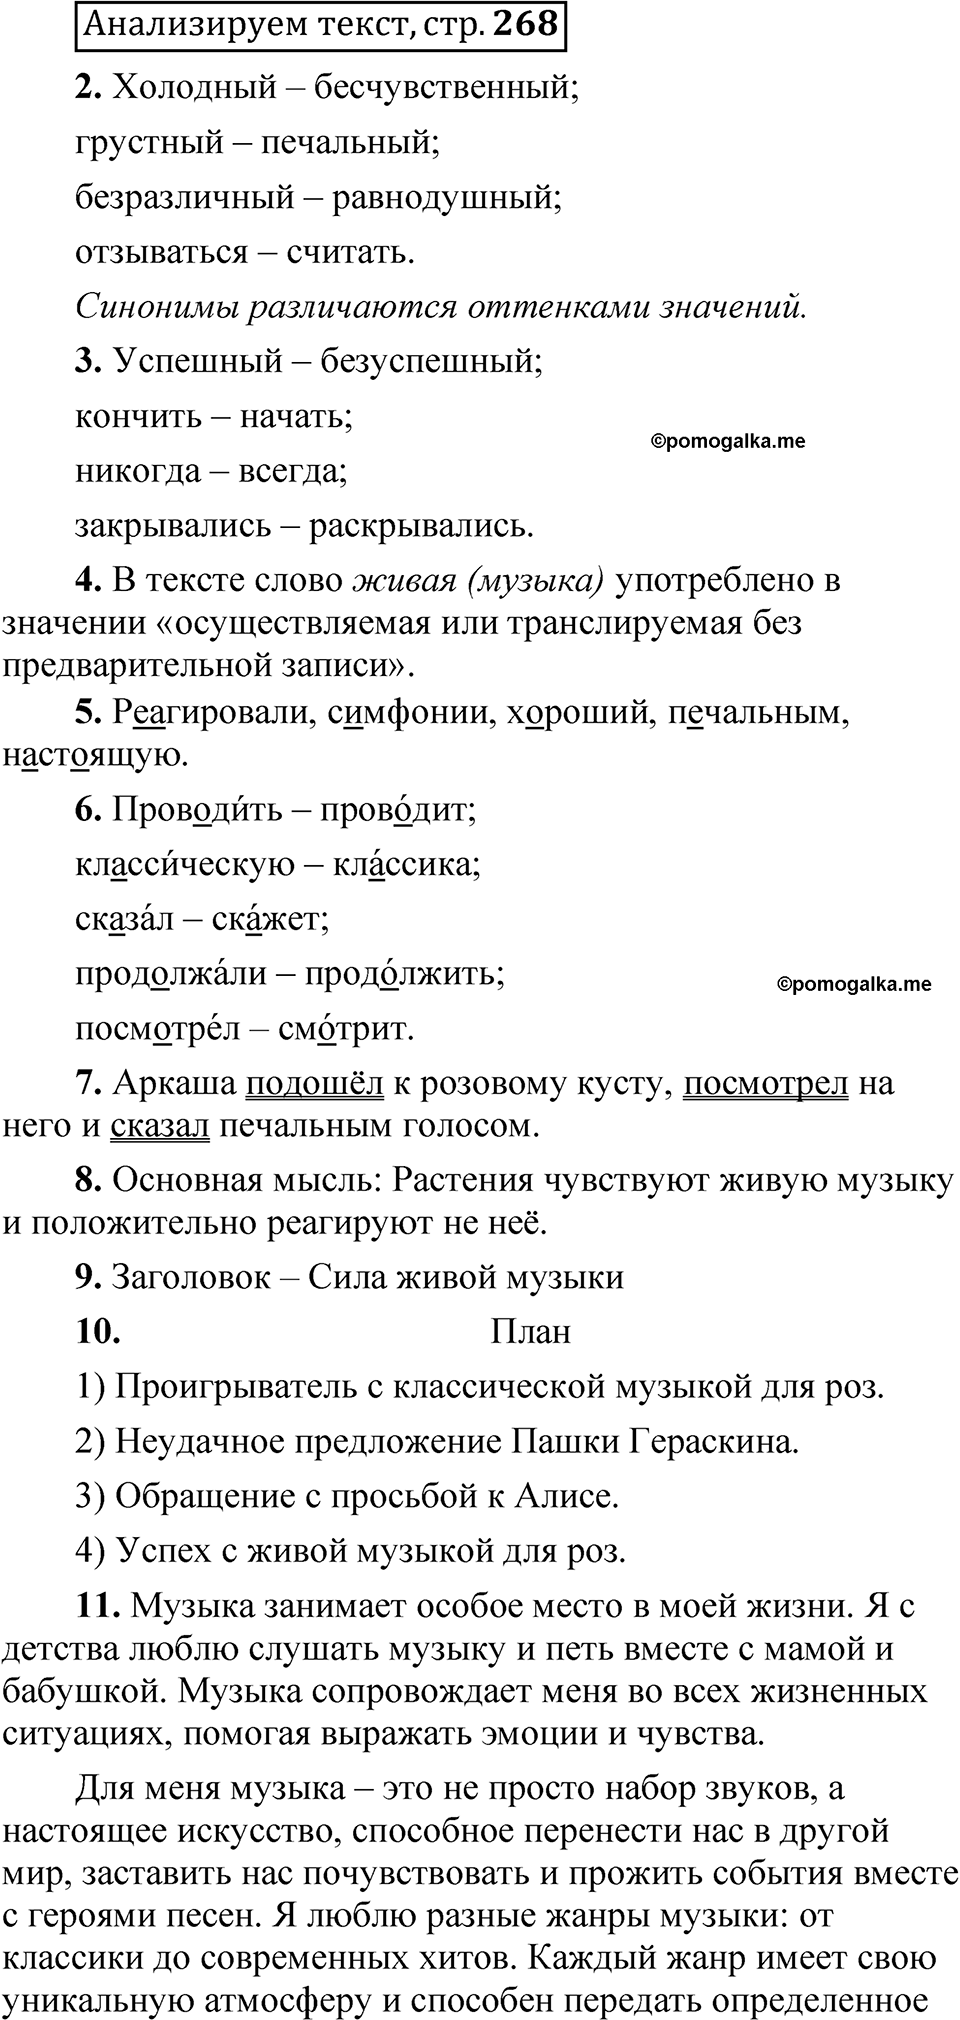 страница 267 Анализируем текст русский язык 5 класс Быстрова, Кибирева 1 часть 2021 год